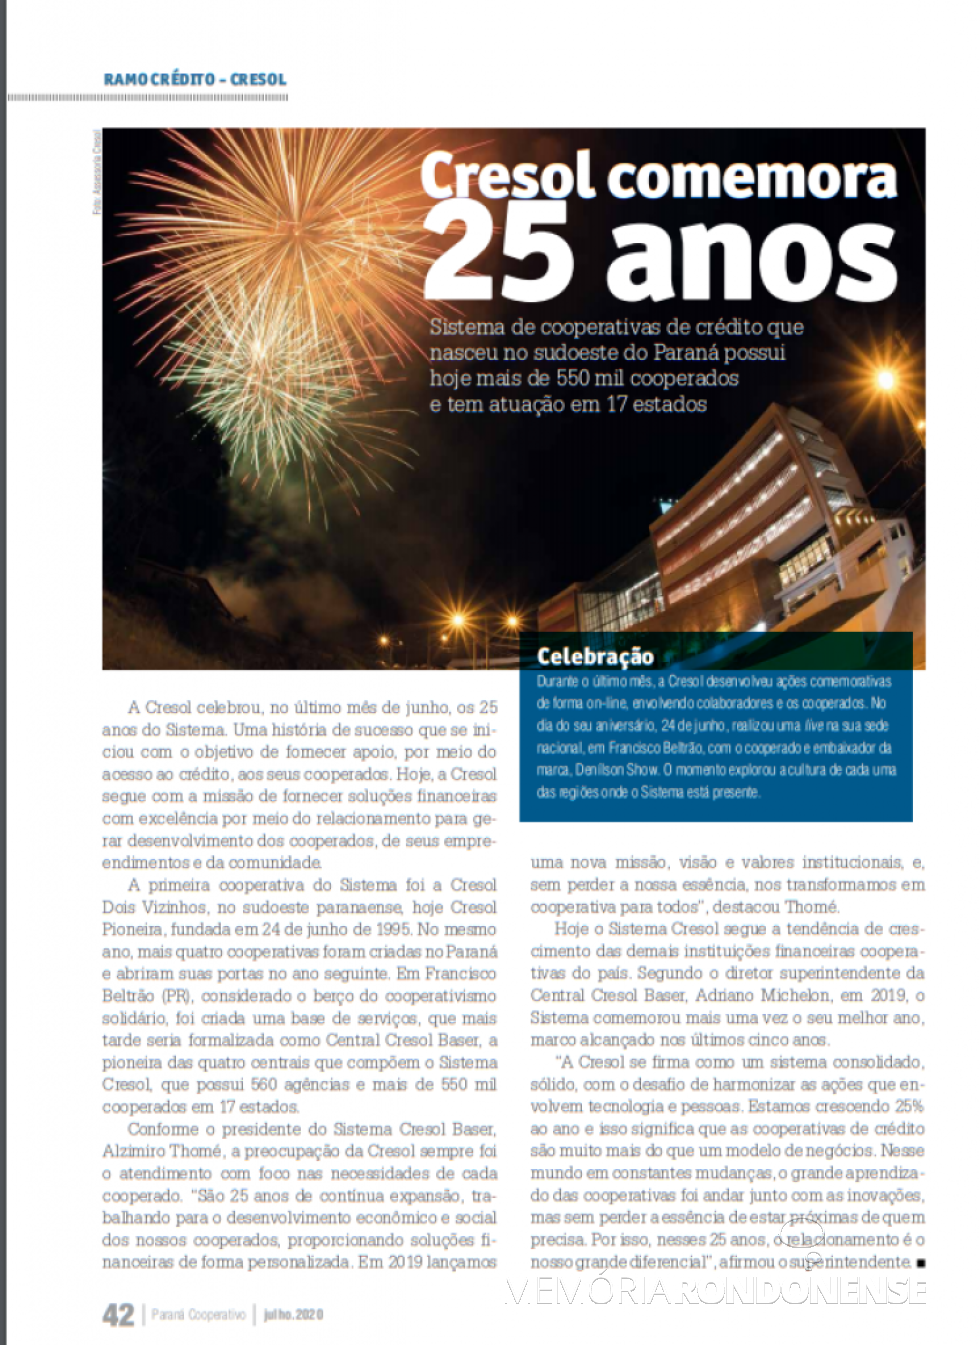 Destaque da revista Paraná Cooperativo alusivo aos 25 anos do Sistema Cresol. 
Imagem: Acervo Ocepar - FOTO 20 - 